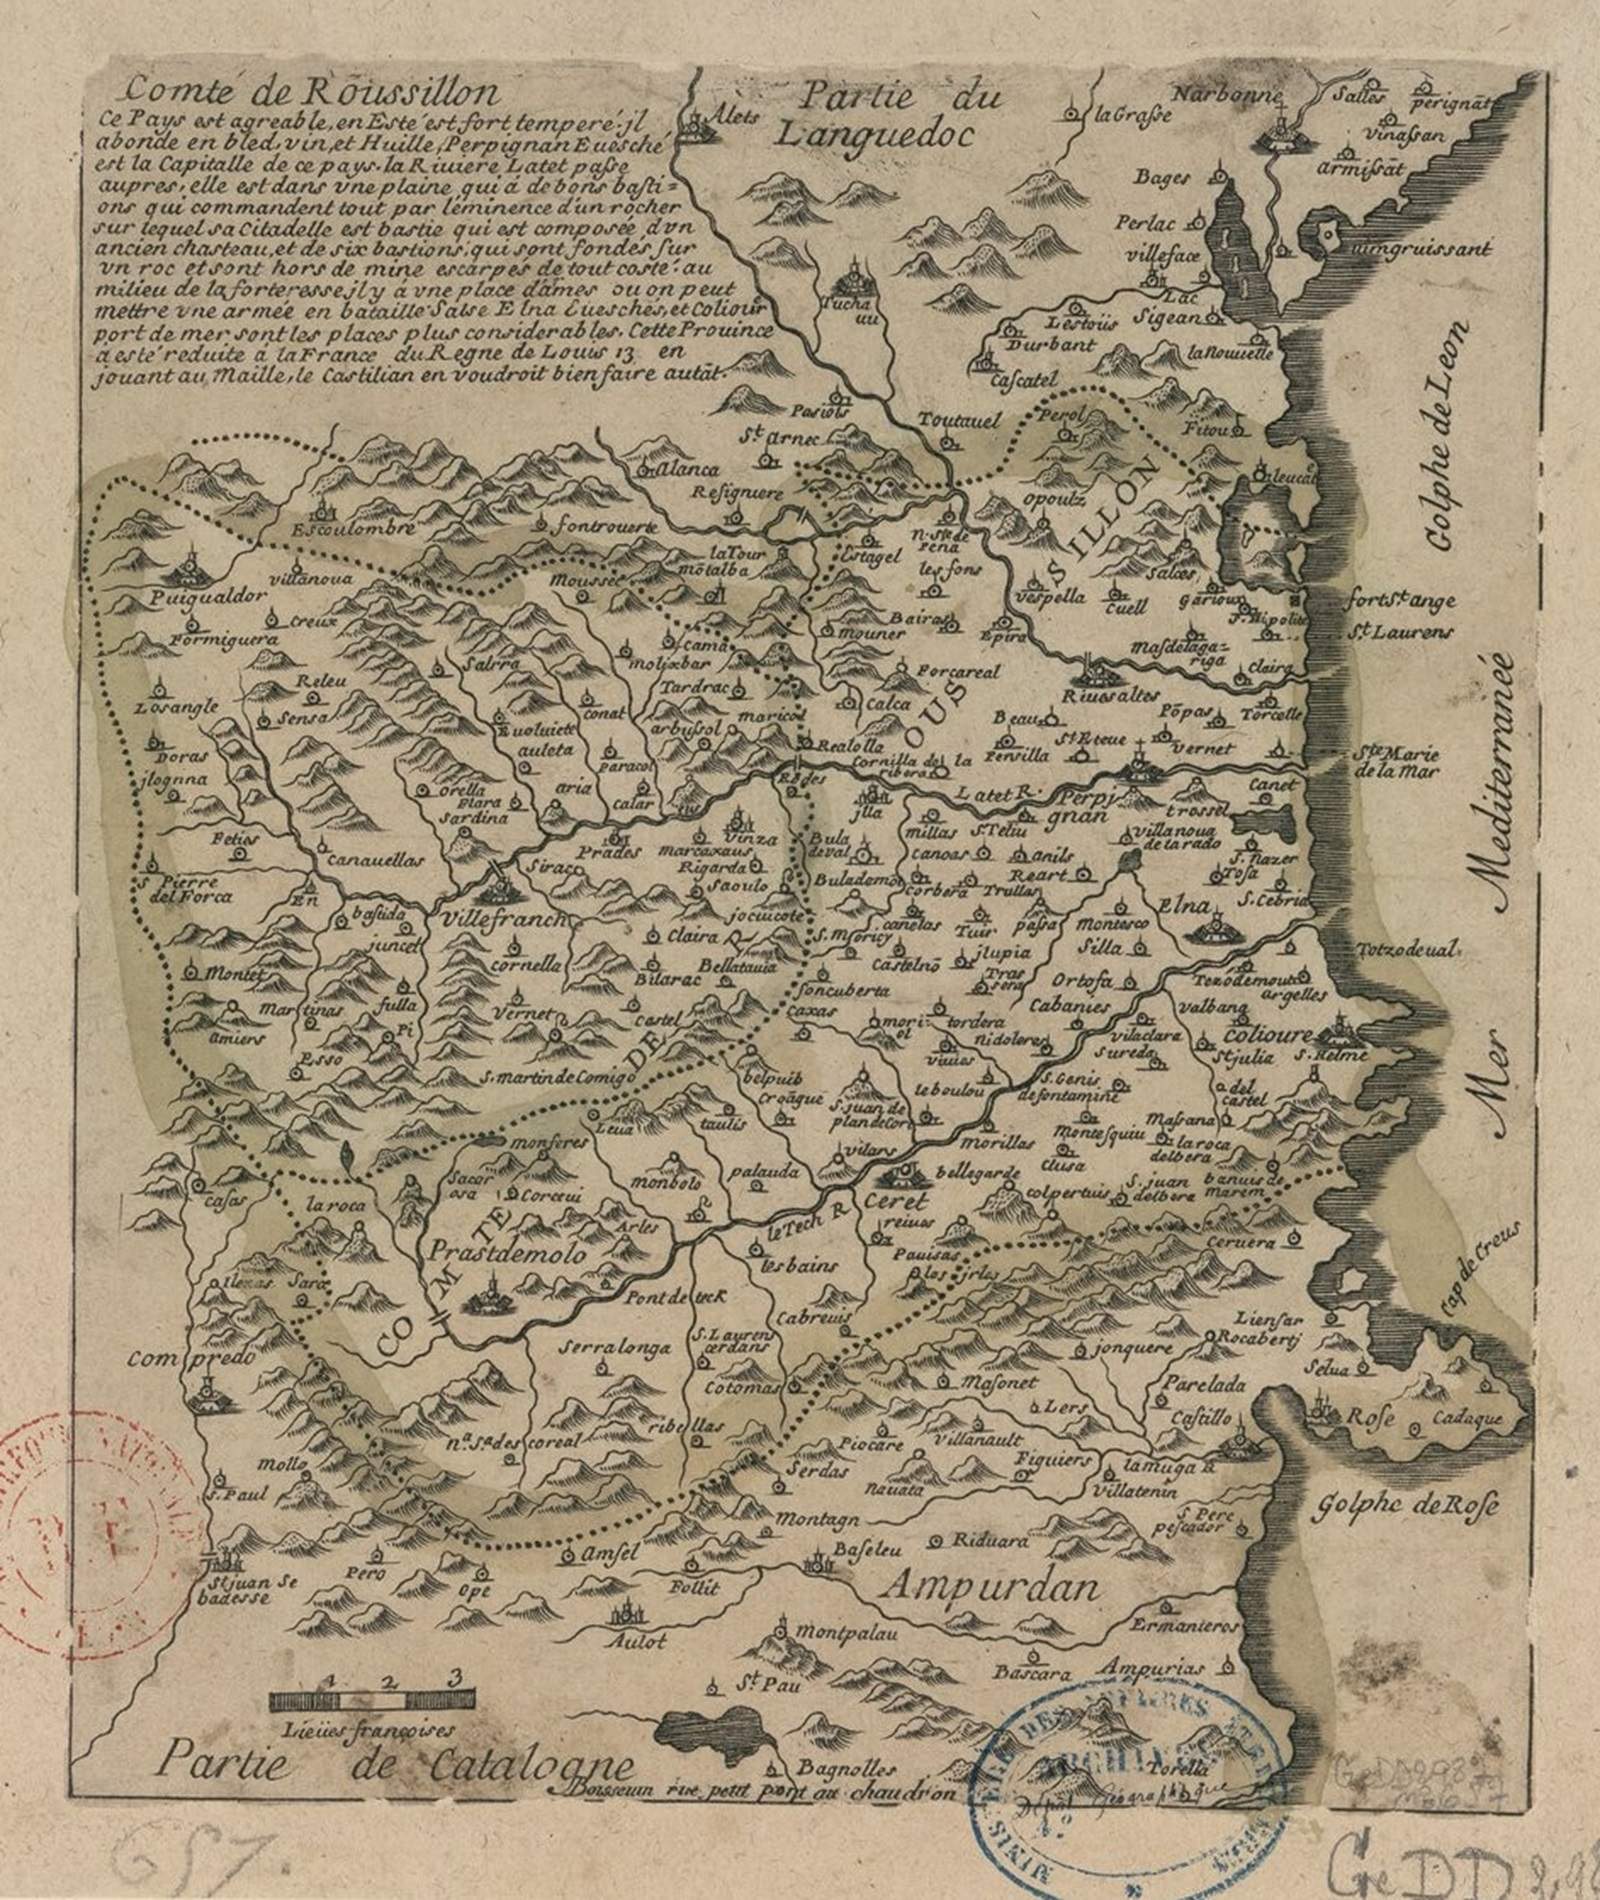 Mapa francès del comtat del Rosselló (segle XVII). Font Bibliothèque Nationale de France